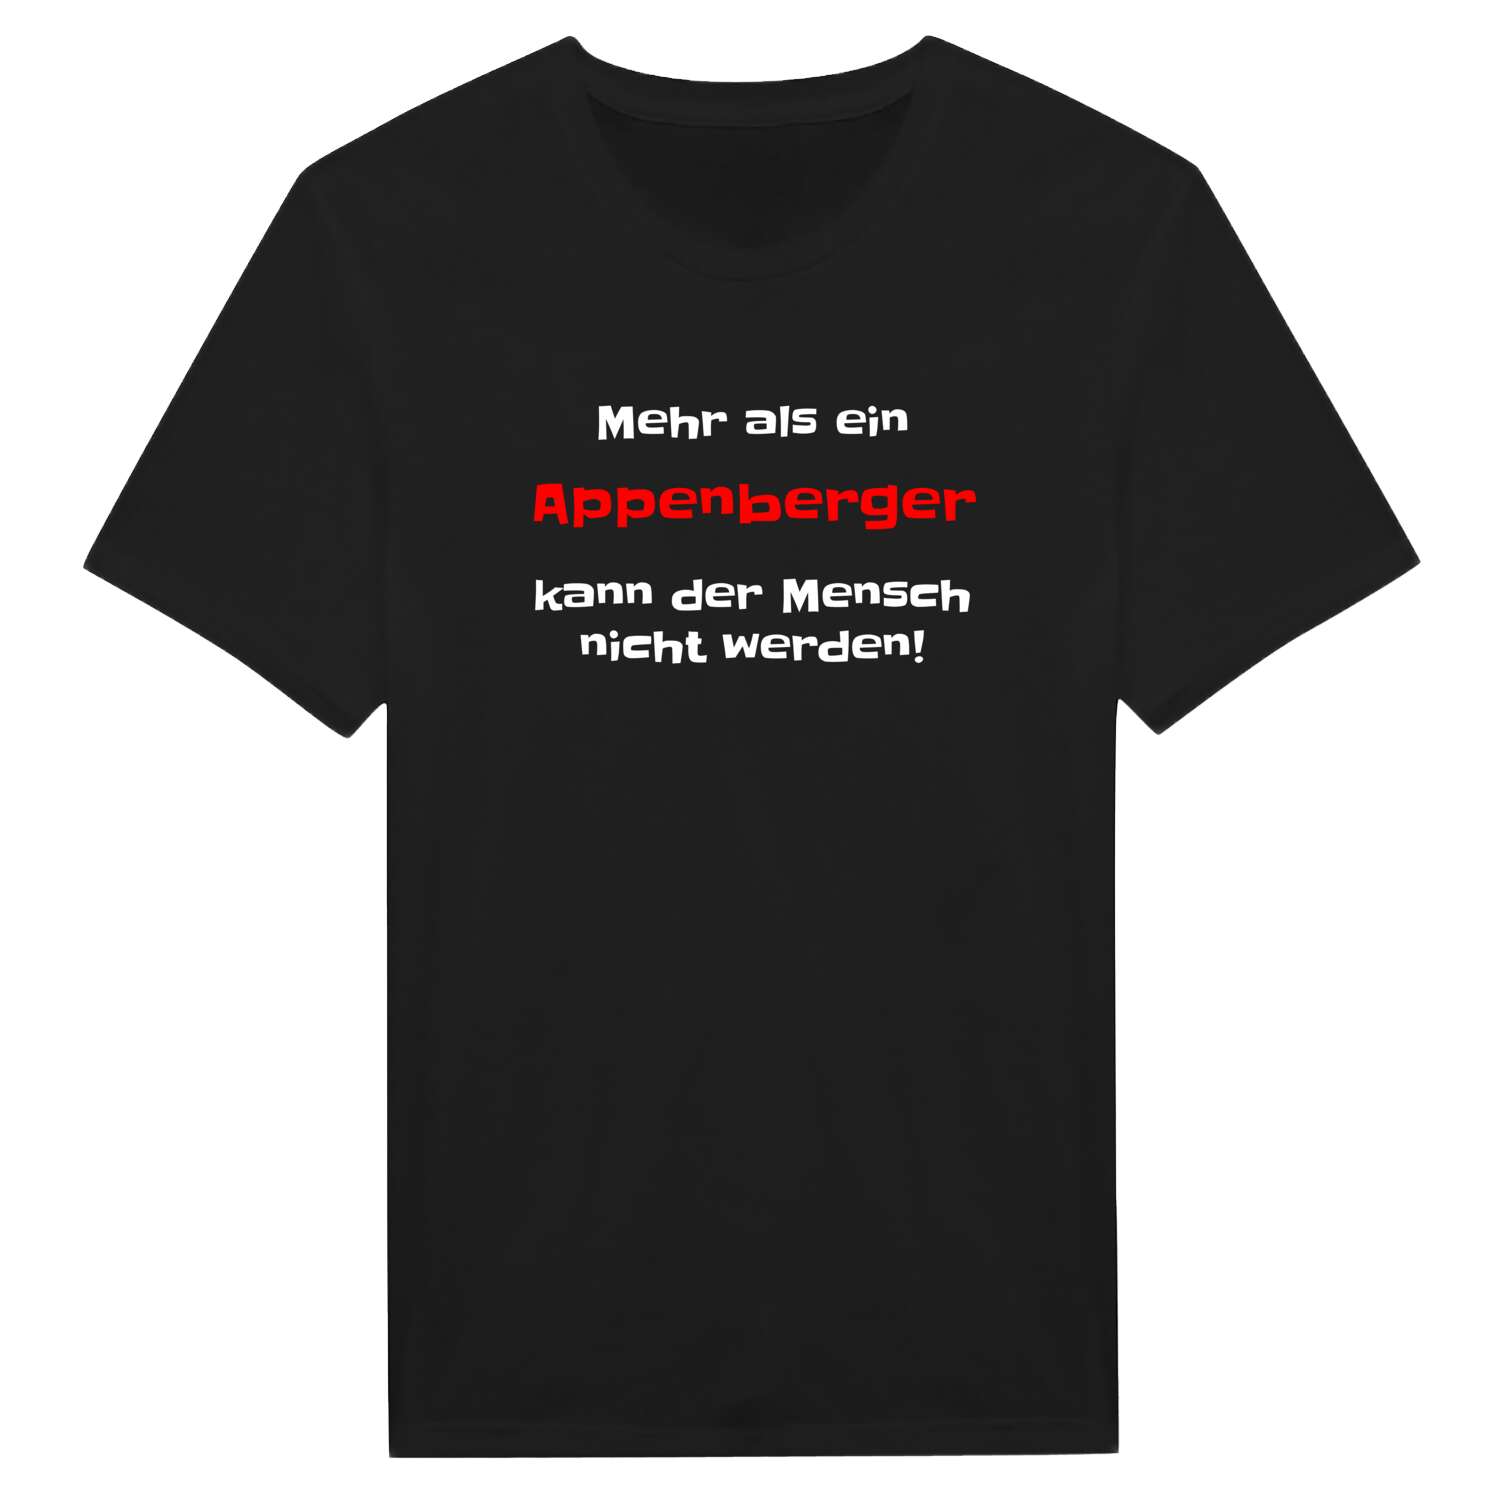 Appenberg T-Shirt »Mehr als ein«